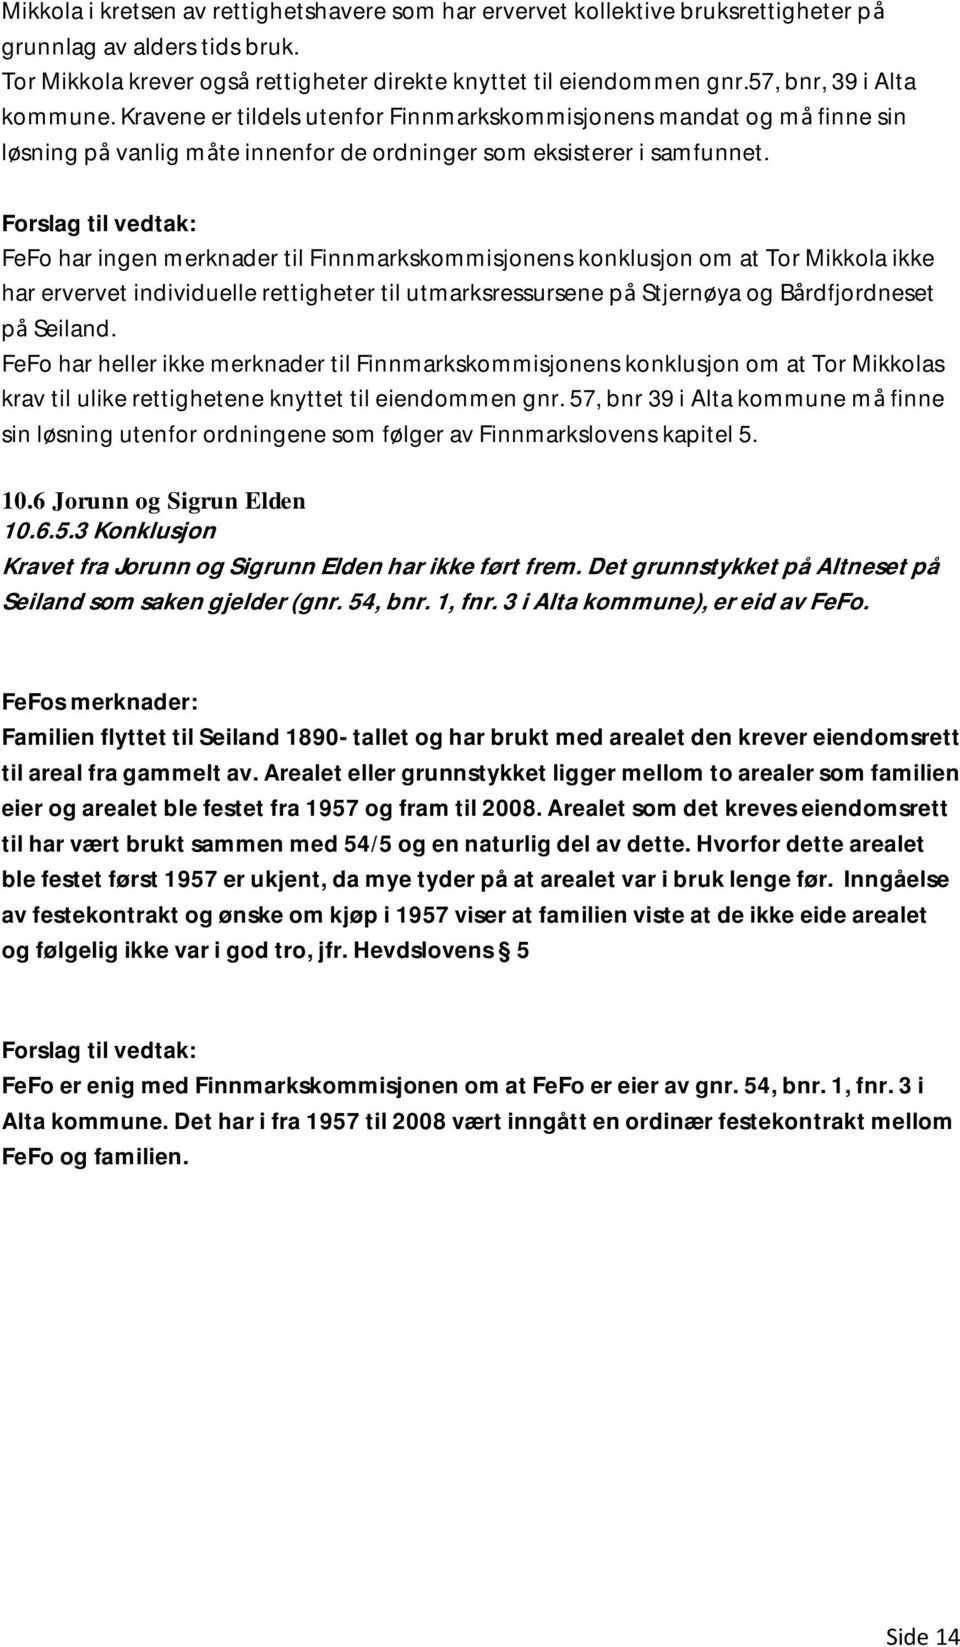 FeFo har ingen merknader til Finnmarkskommisjonens konklusjon om at Tor Mikkola ikke har ervervet individuelle rettigheter til utmarksressursene på Stjernøya og Bårdfjordneset på Seiland.